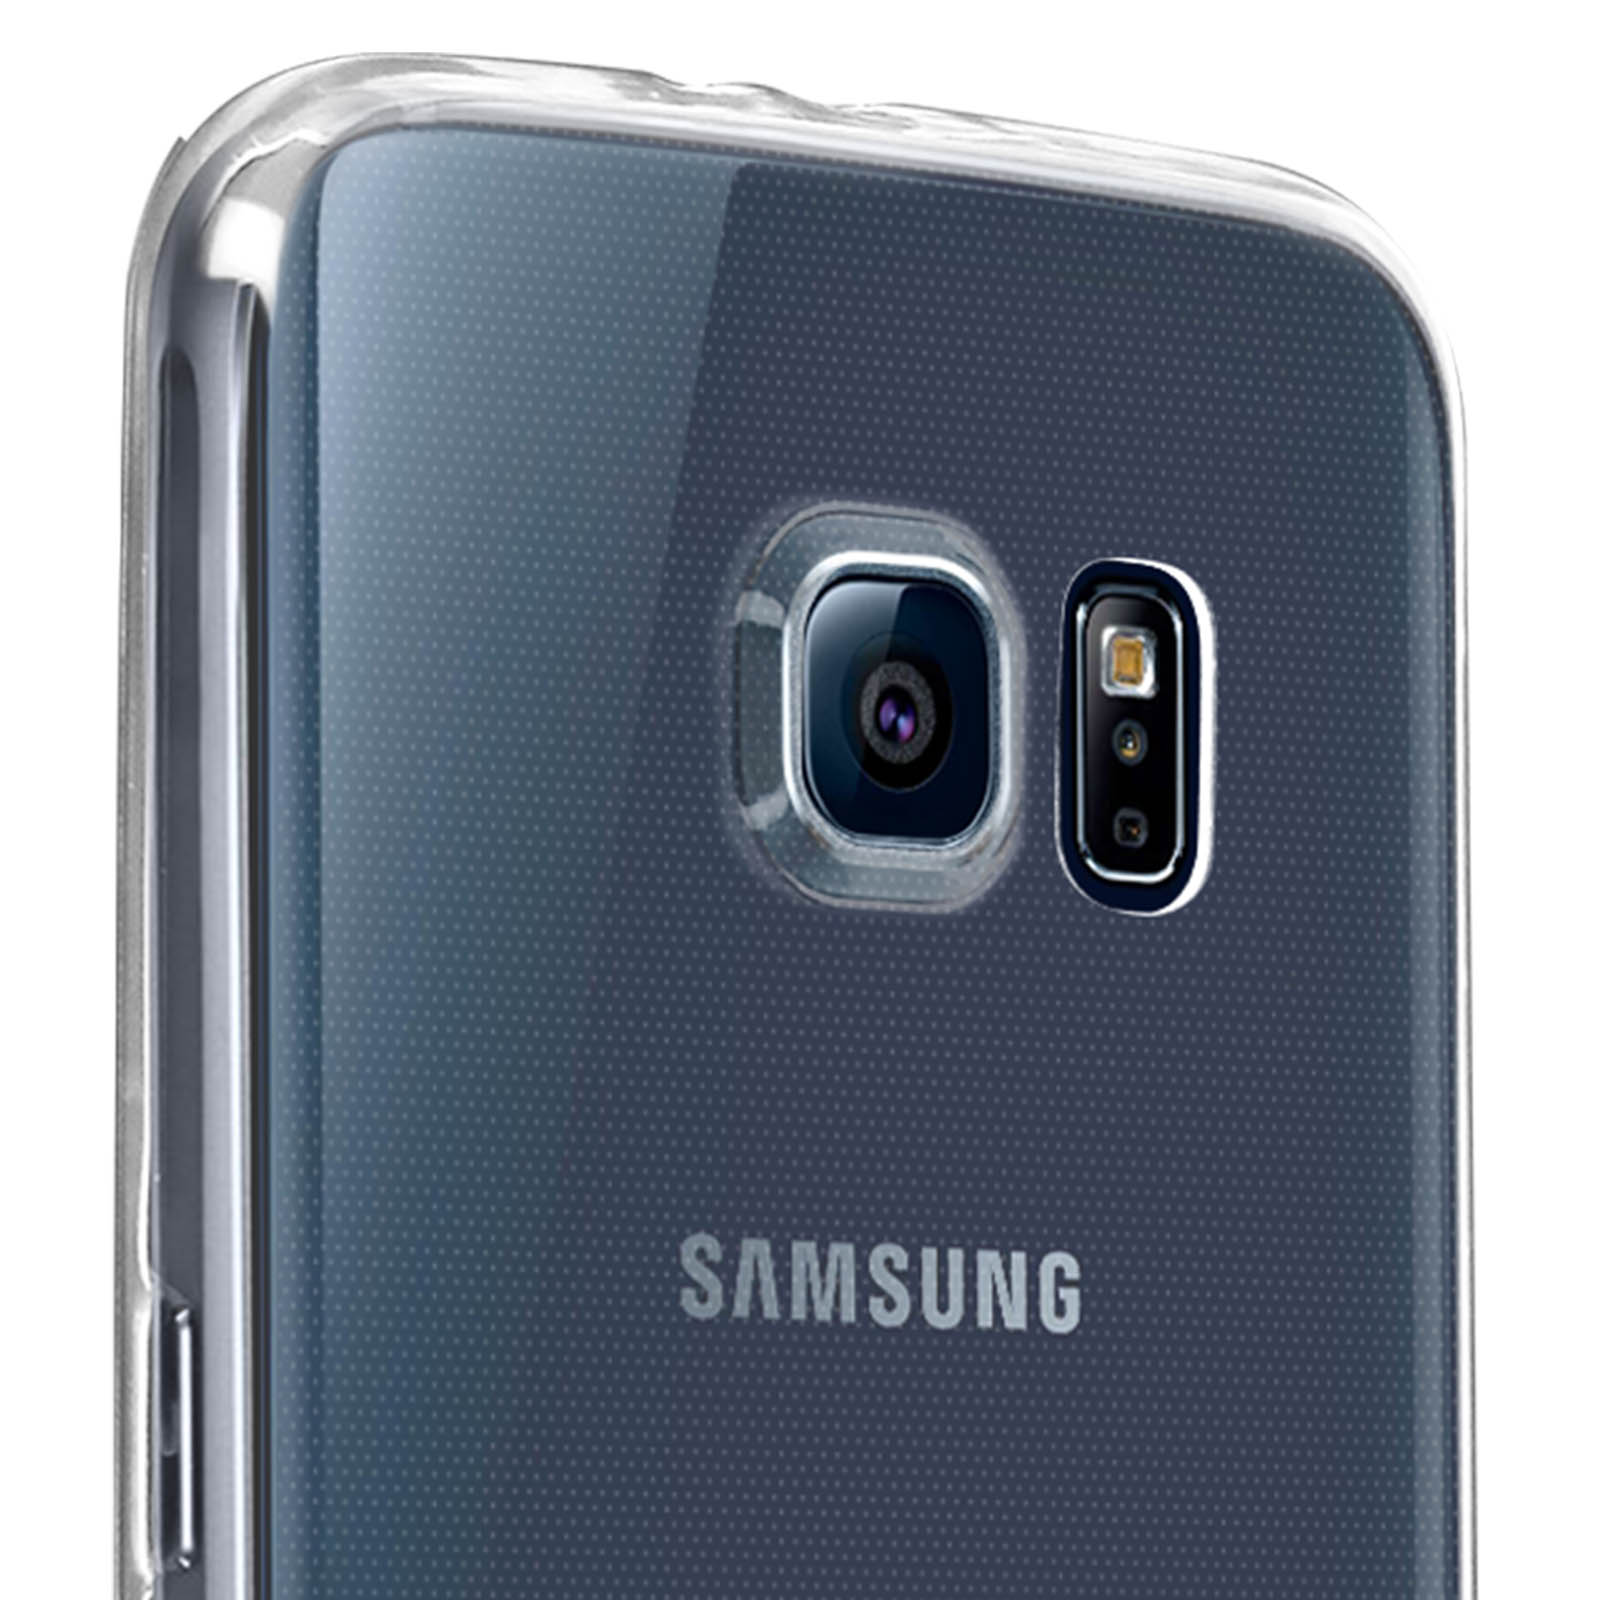 Backcover, Galaxy AVIZAR Series, S6, Transparent Samsung, Set